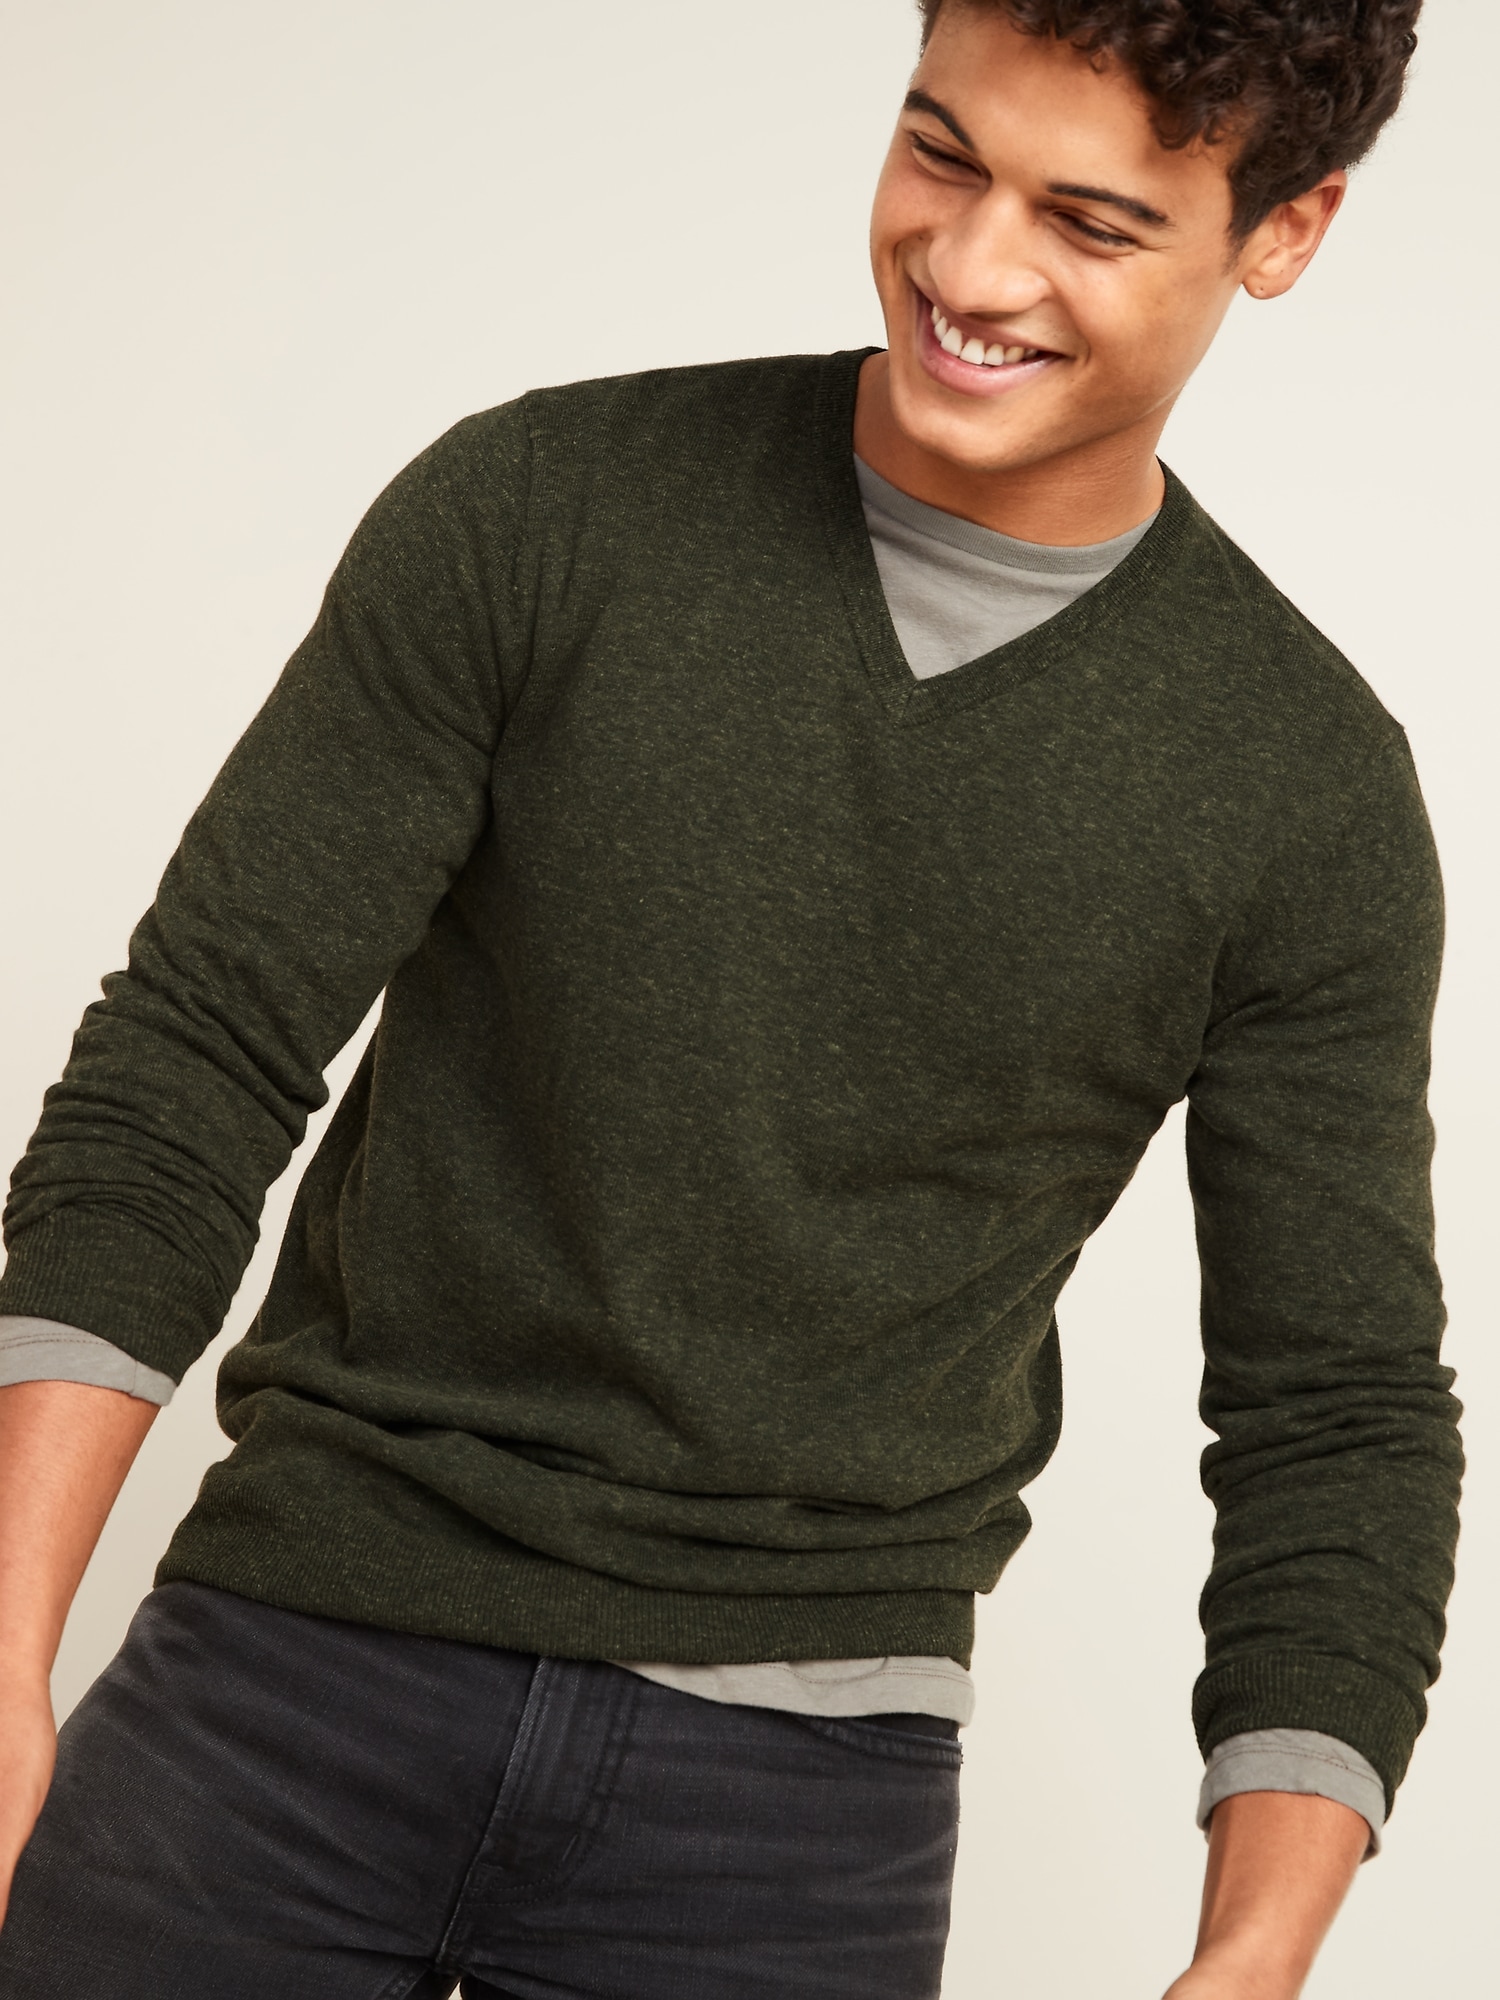 Soft-Washed V-Neck Sweater for Men | Old Navy